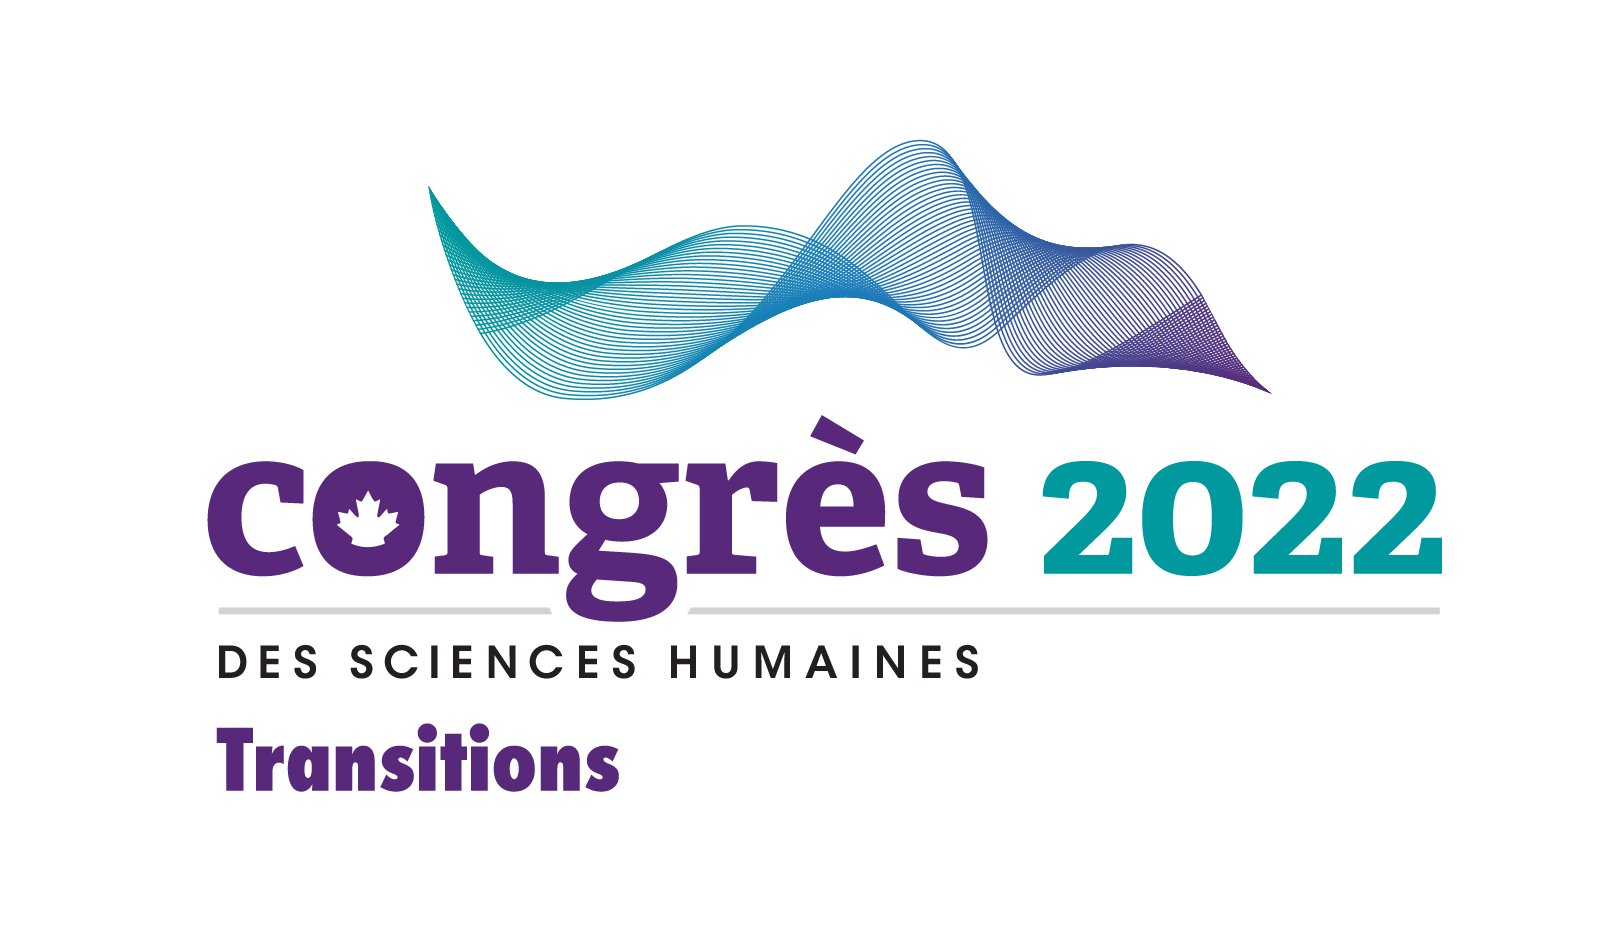 Une forme de vague bleue sarcelle, bleue et violette constitue le logo du Congrès 2022, avec le texte en français « Congrès 2022 des sciences humaines ». Le nom du thème « Transitions » se trouve sous le logo.